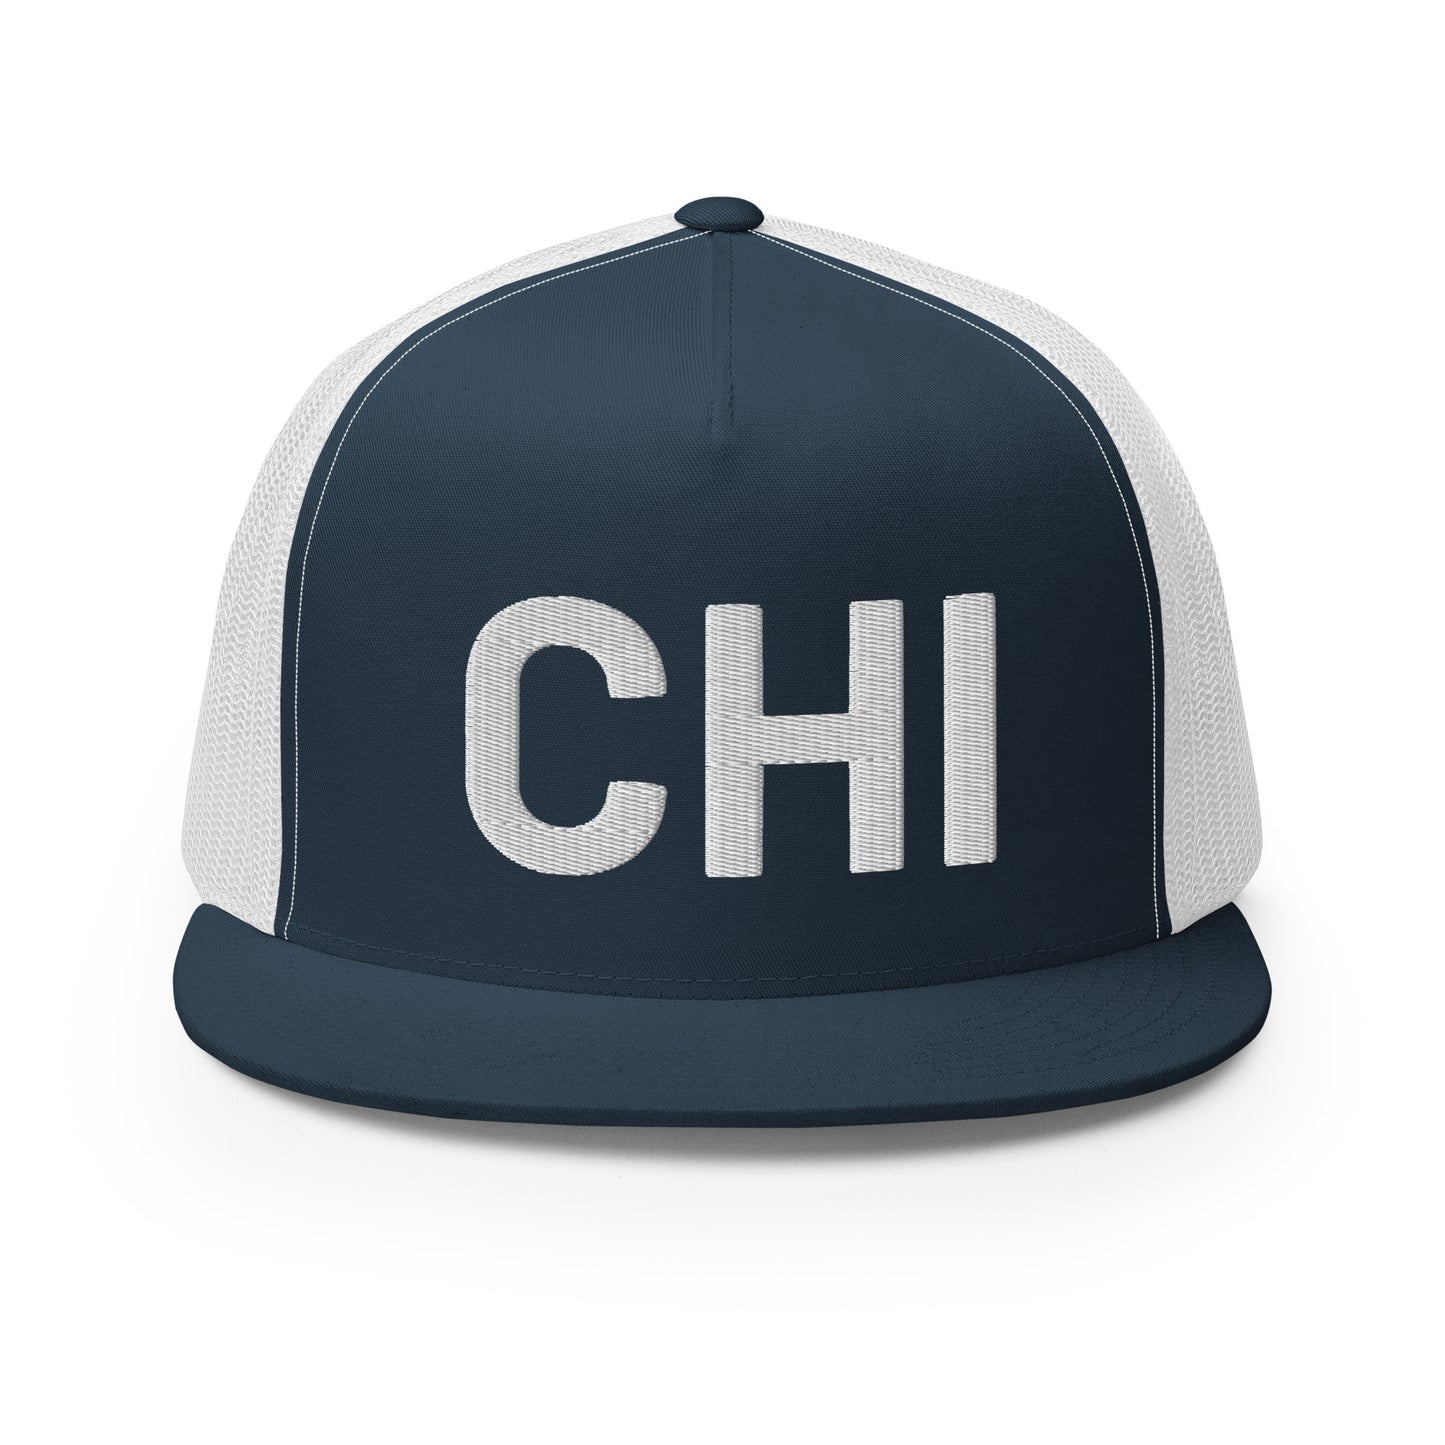 CHI-TOWN Trucker Hat